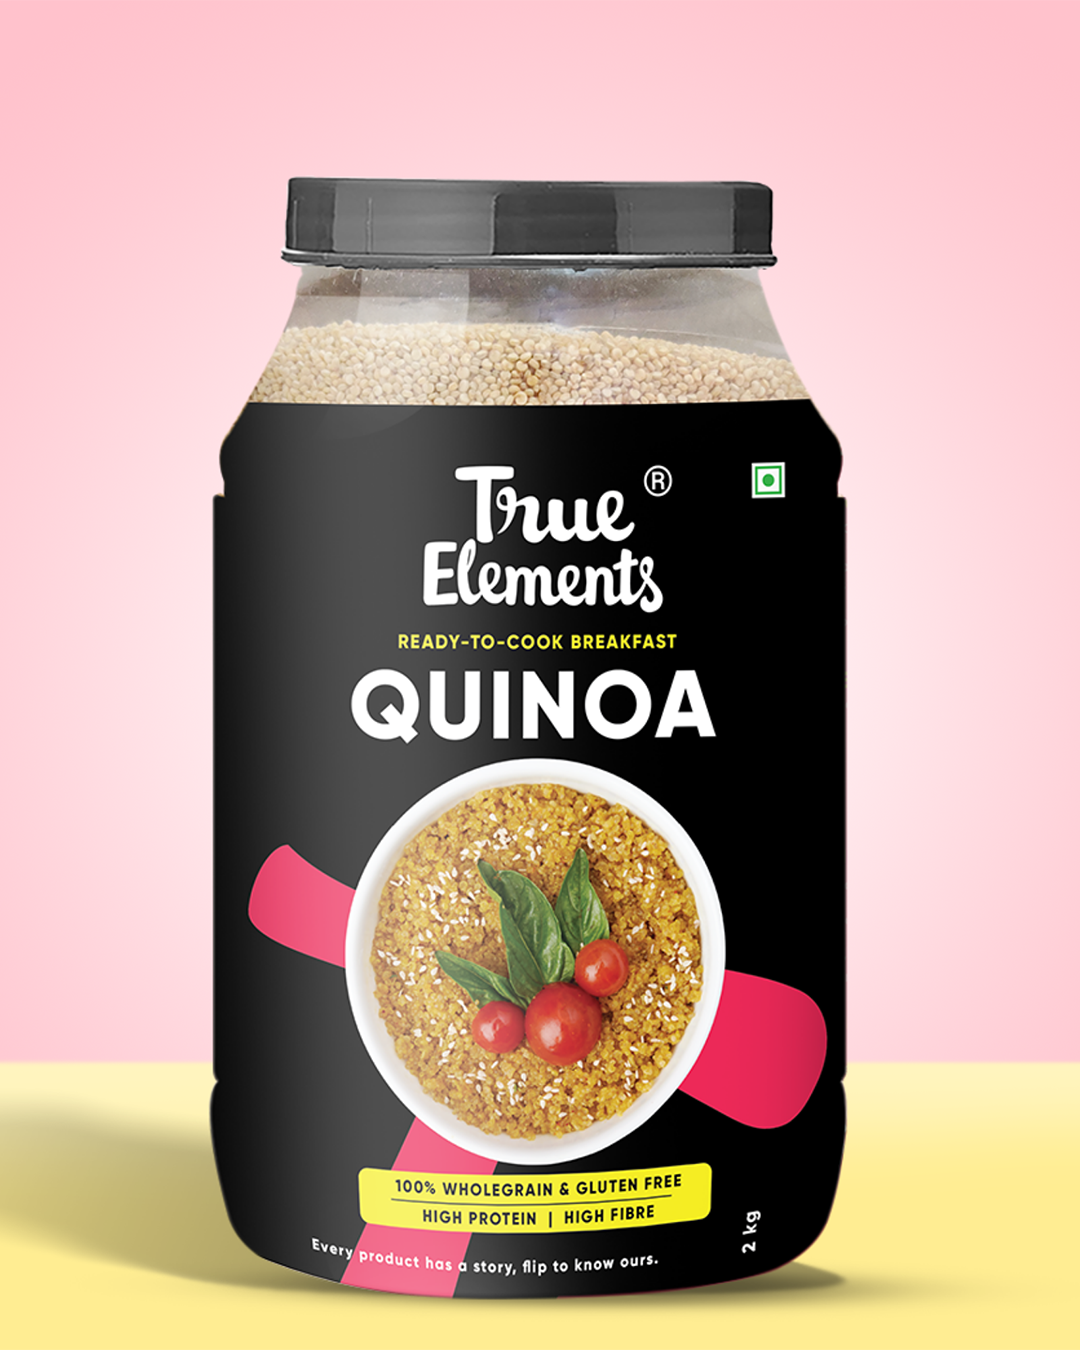 True elements Quinoa 2kg Pouch (Premium Whole Seeds)